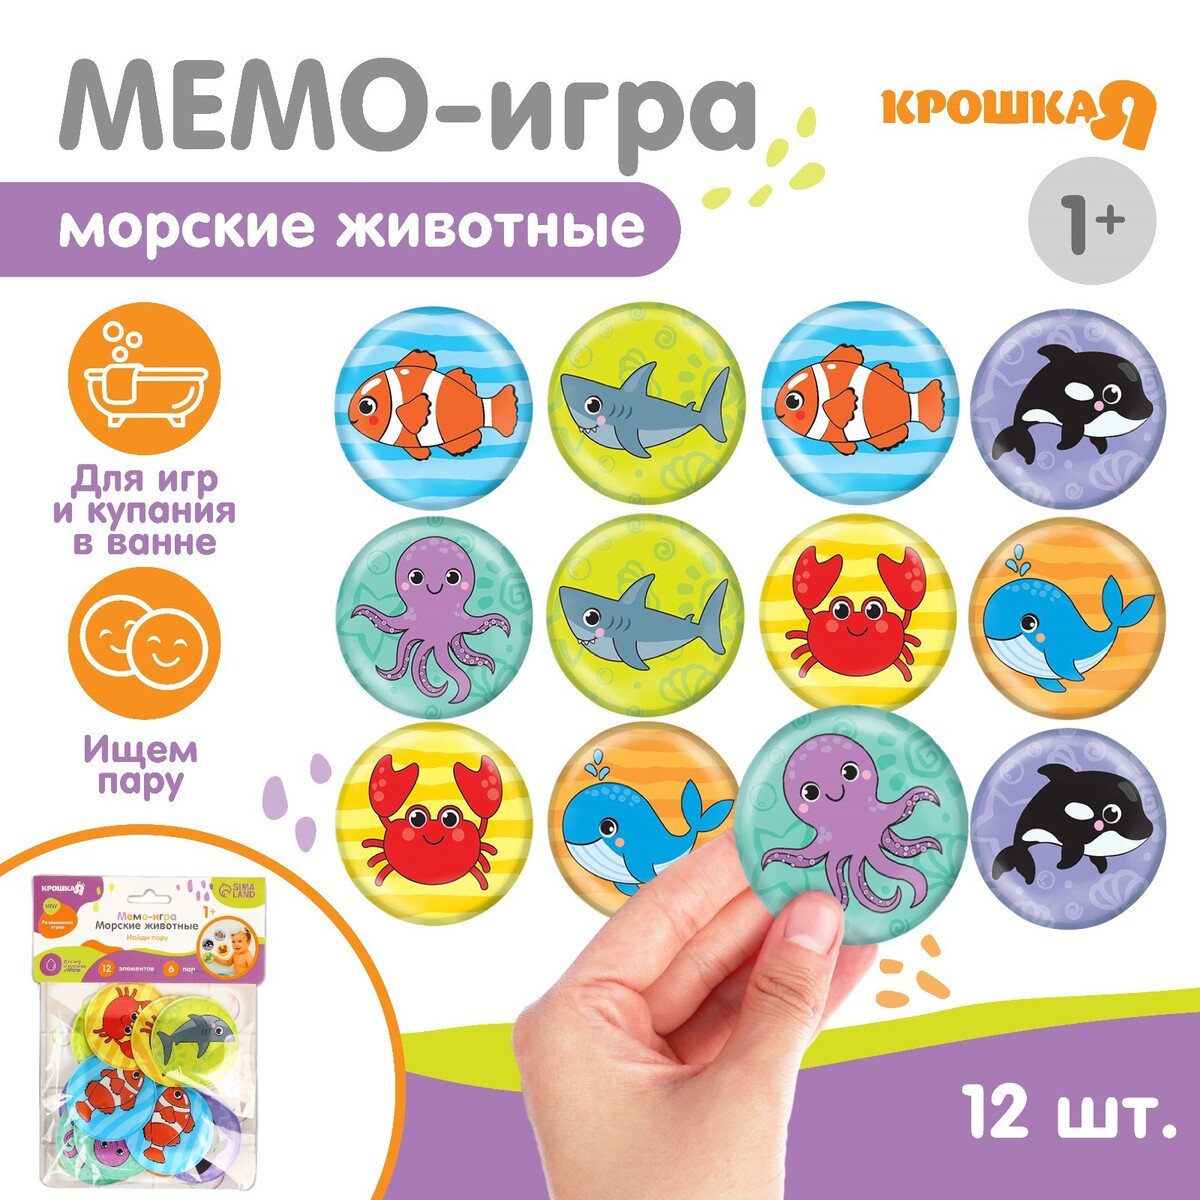 Мемо-игра: развивающие наклейки - присоски многоразовые для игры в ванной игра для развития мелкой моторики